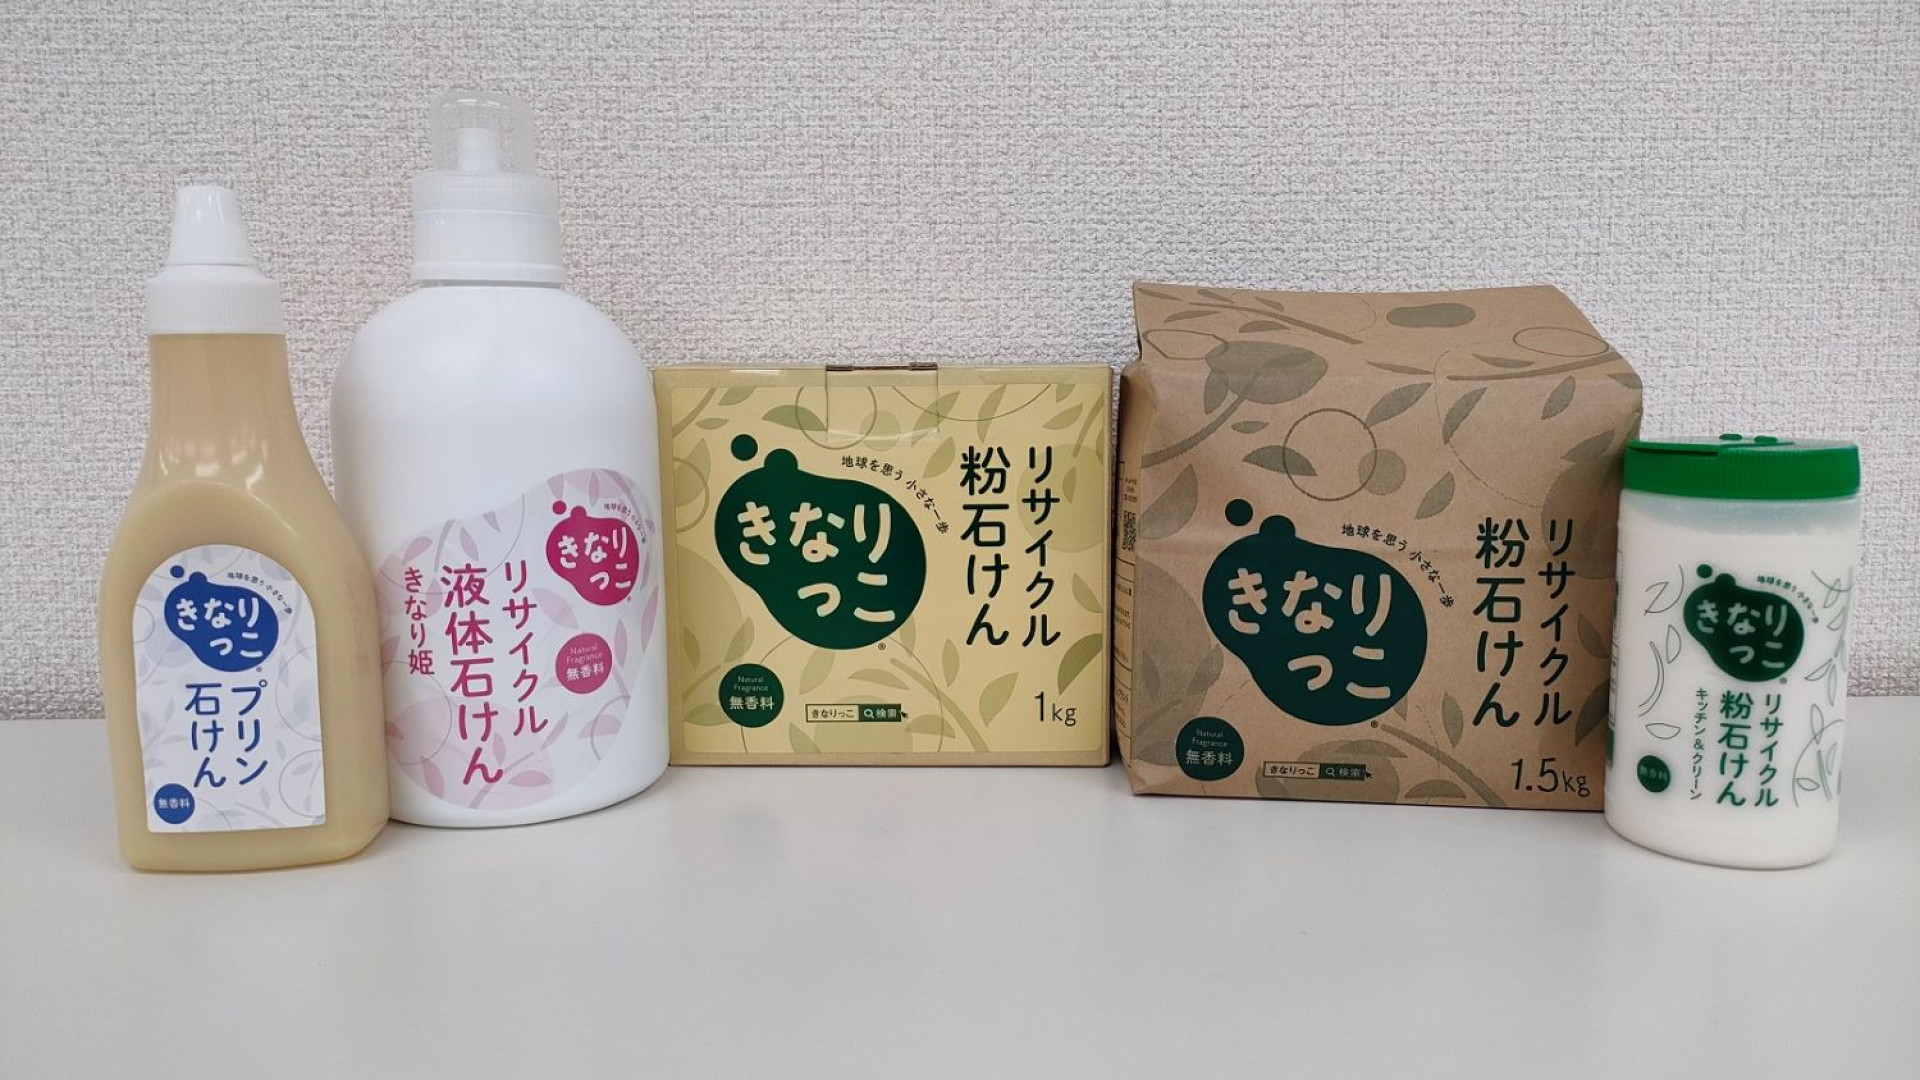 Planta de jabón para ciudadanos de Kawasaki